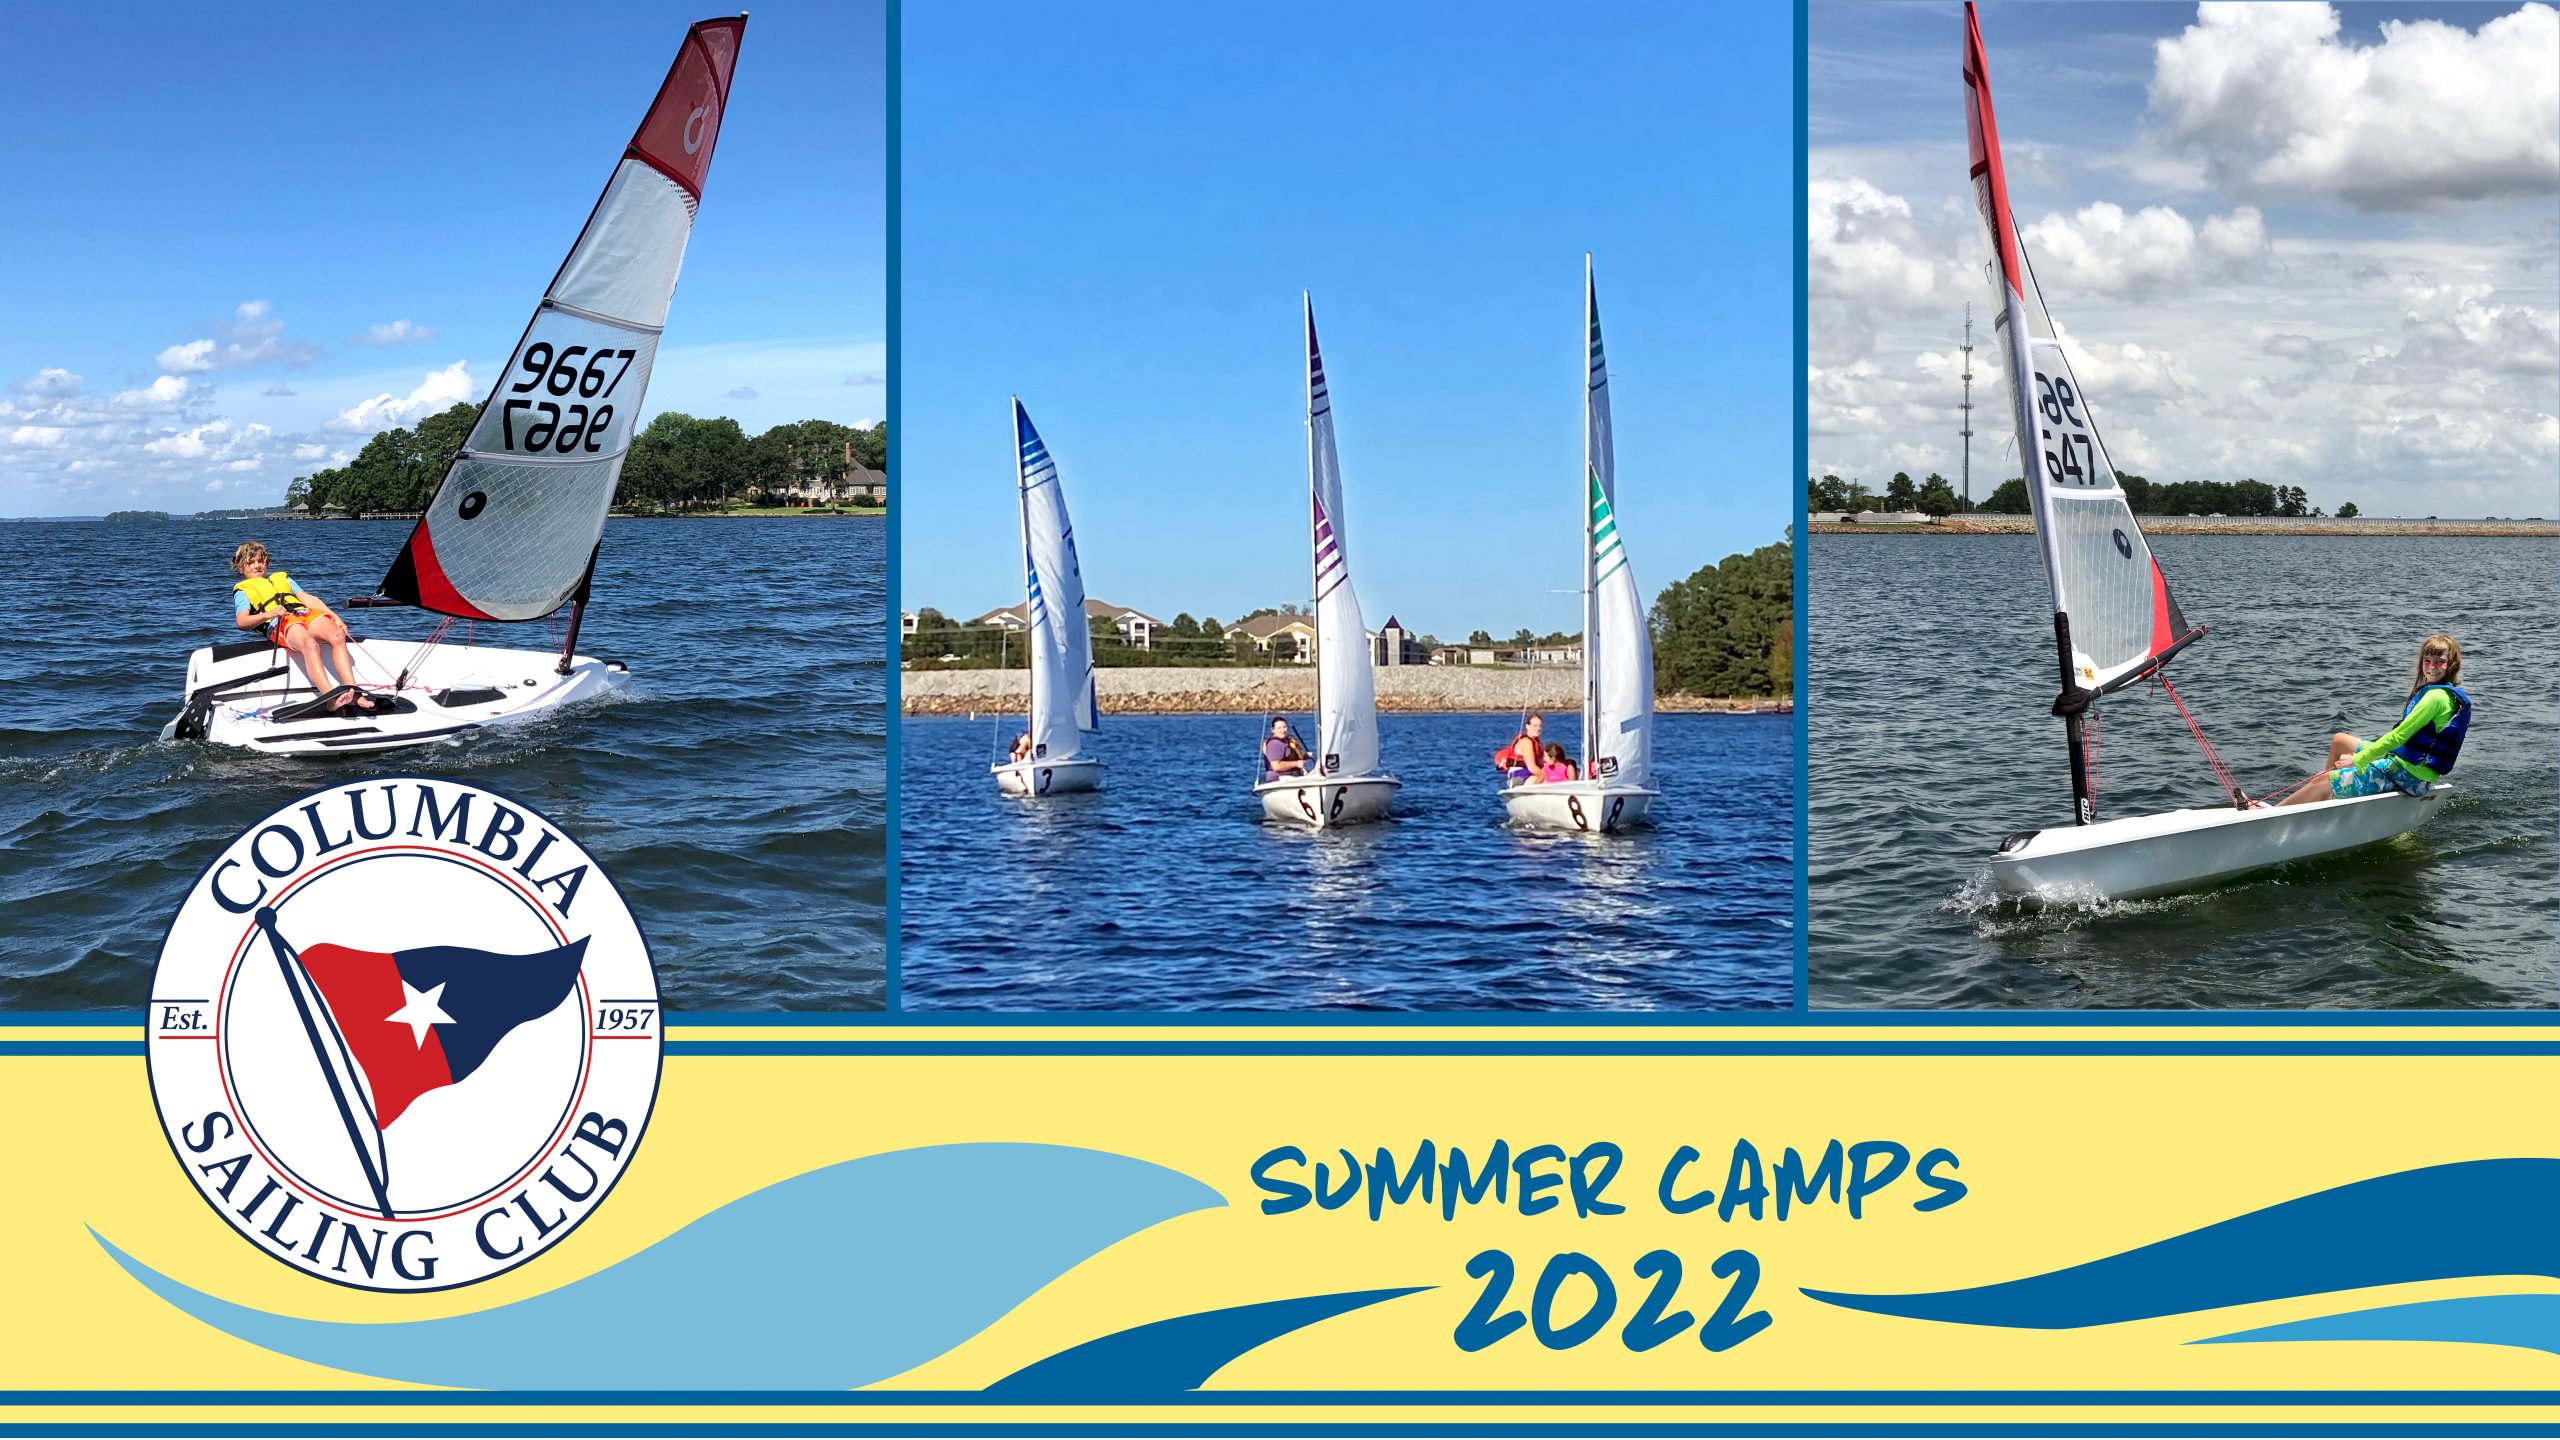 Columbia Sailing Club – Junior Sailing Program 2022 Summer Camps